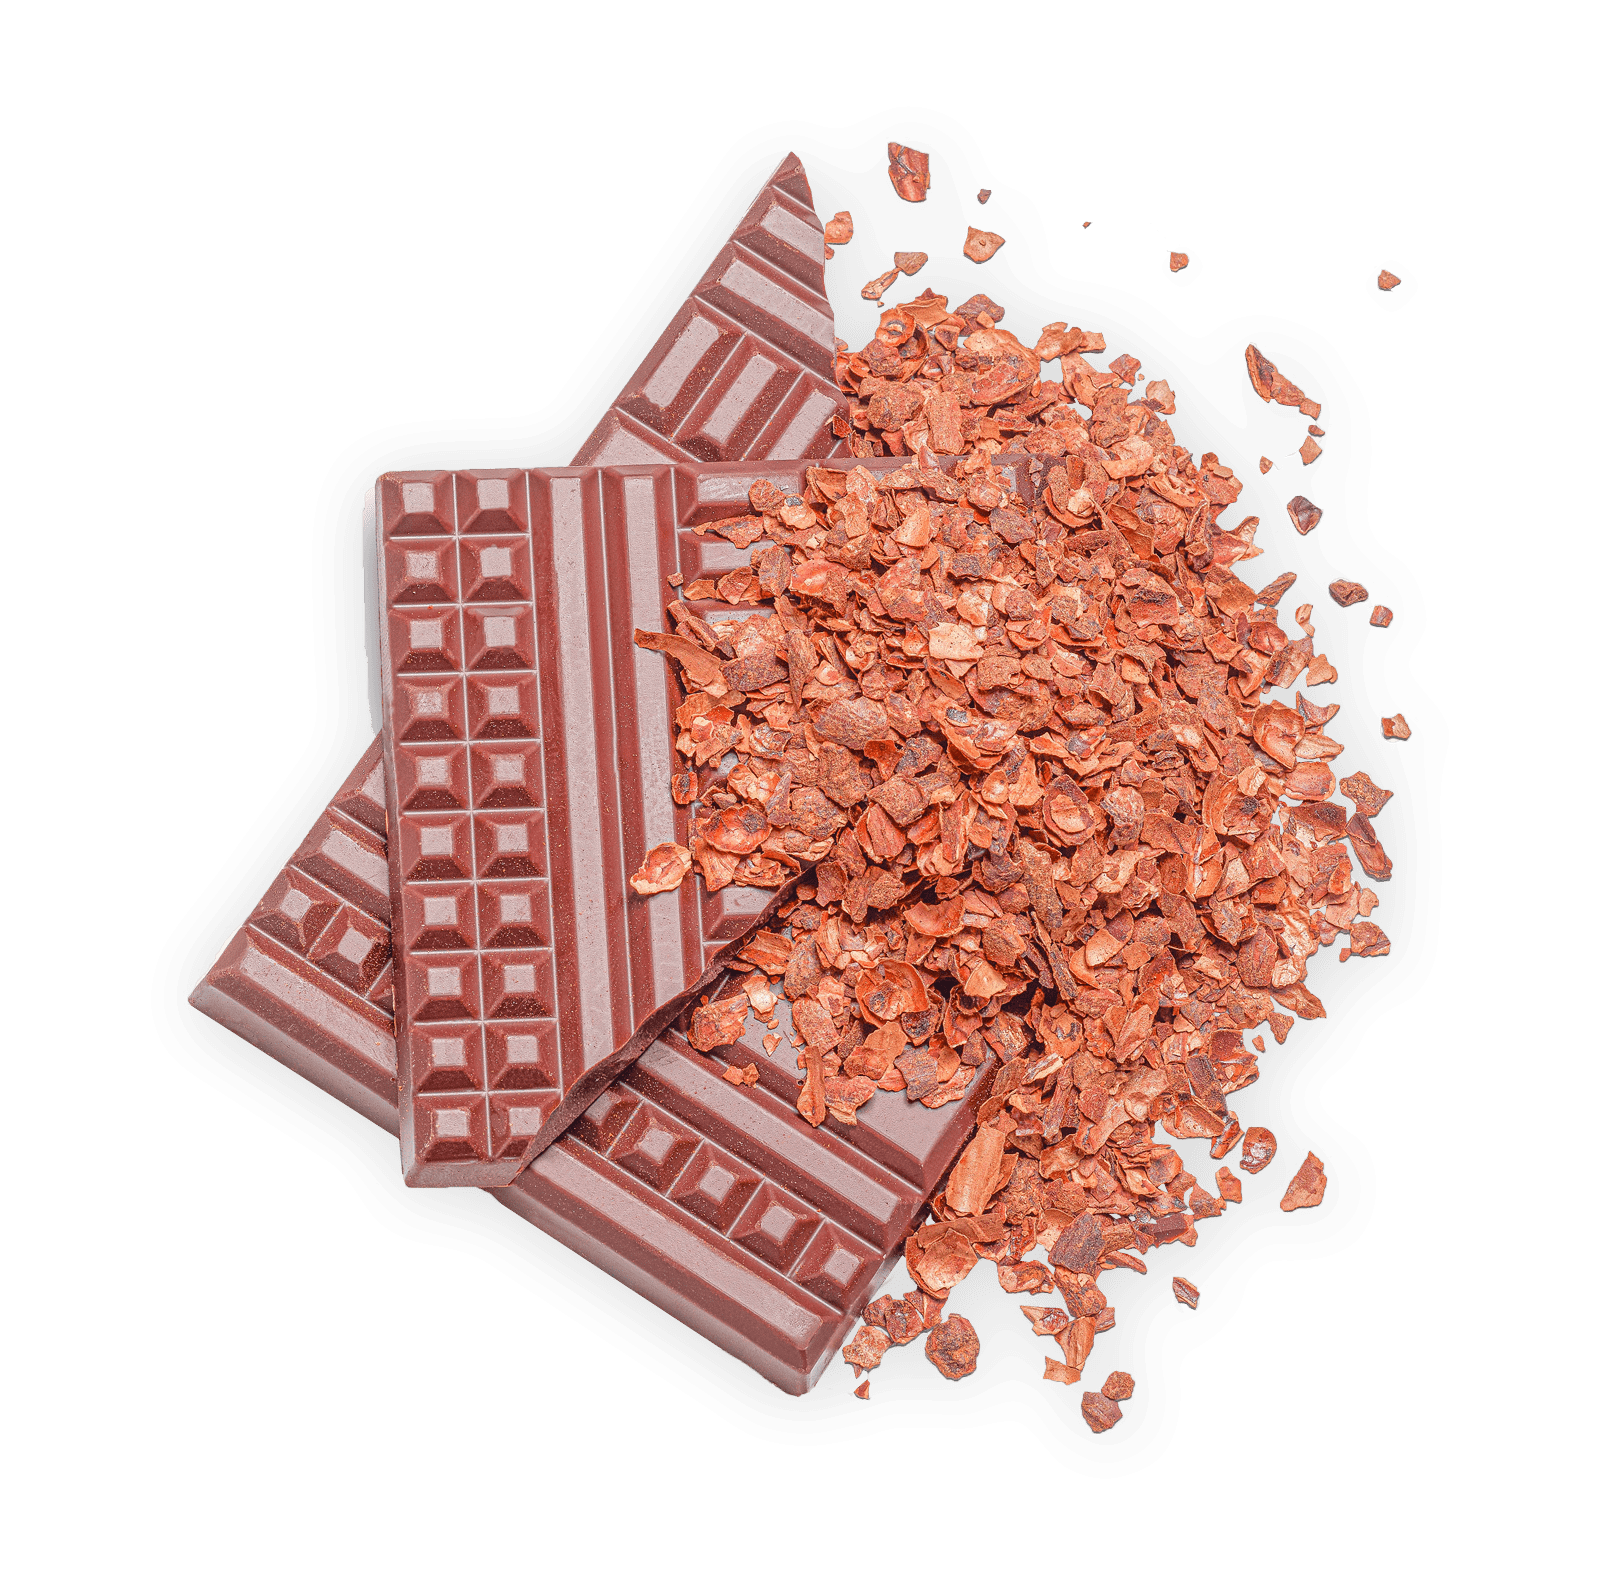 Glace Chocolat Pérou, Ganache